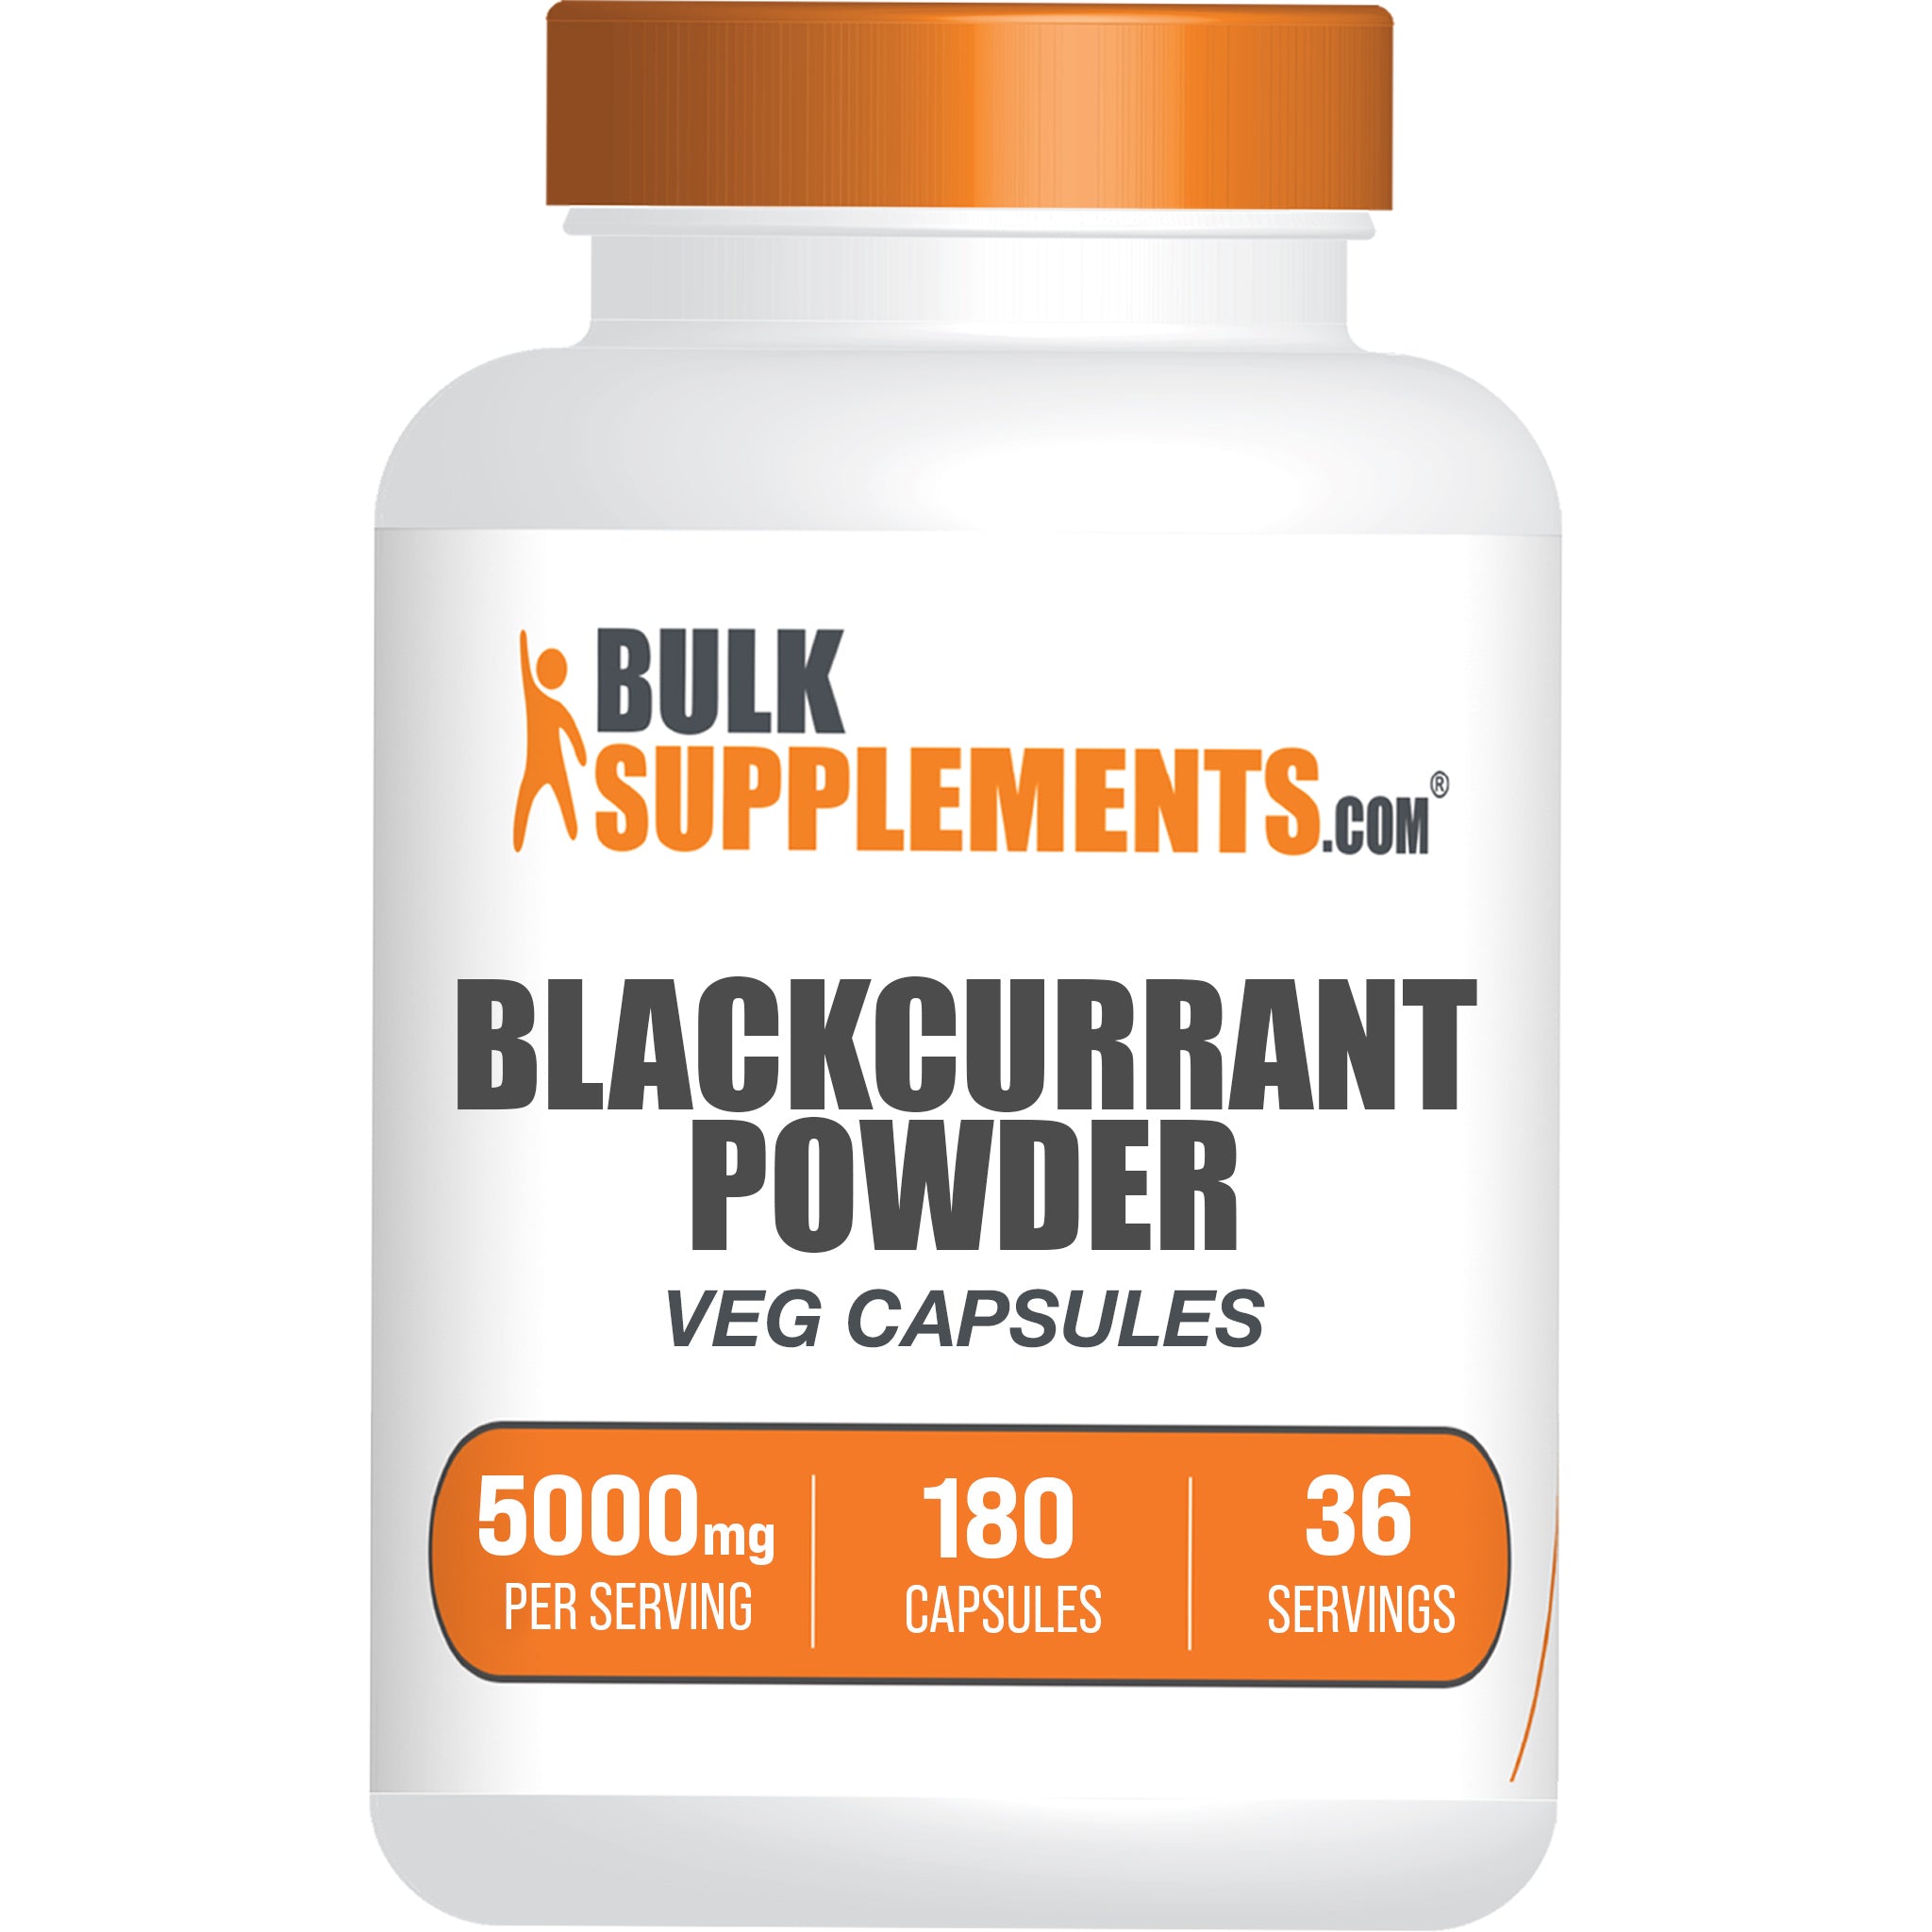 Blackcurrant capsules